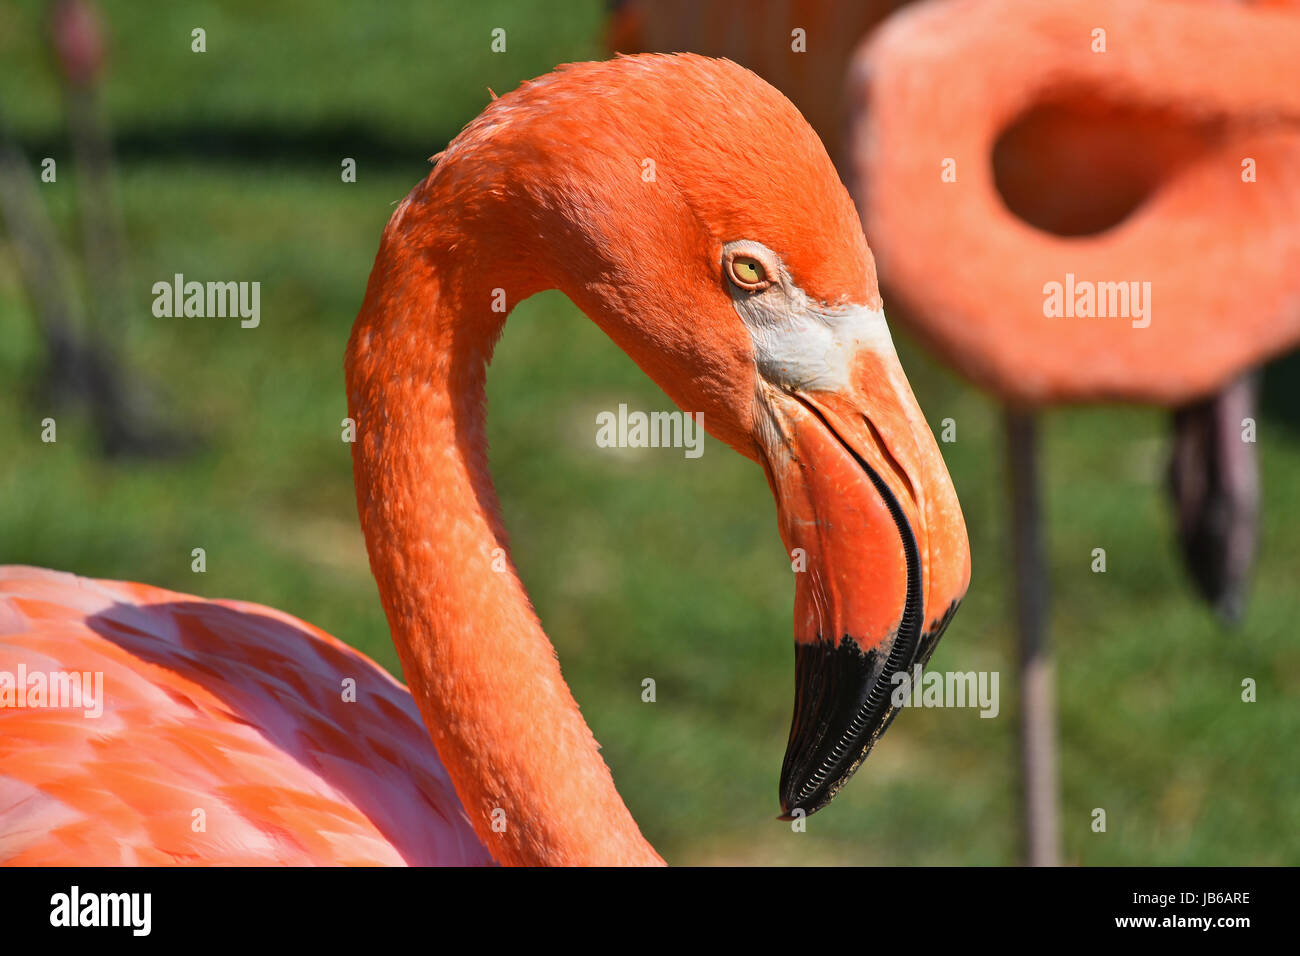 Nahaufnahme der Seite Profilbildnis von rosa orange Flamingo, Kopf mit Schnabel, über grünen Rasen Hintergrund, erhöhte Ansicht Stockfoto